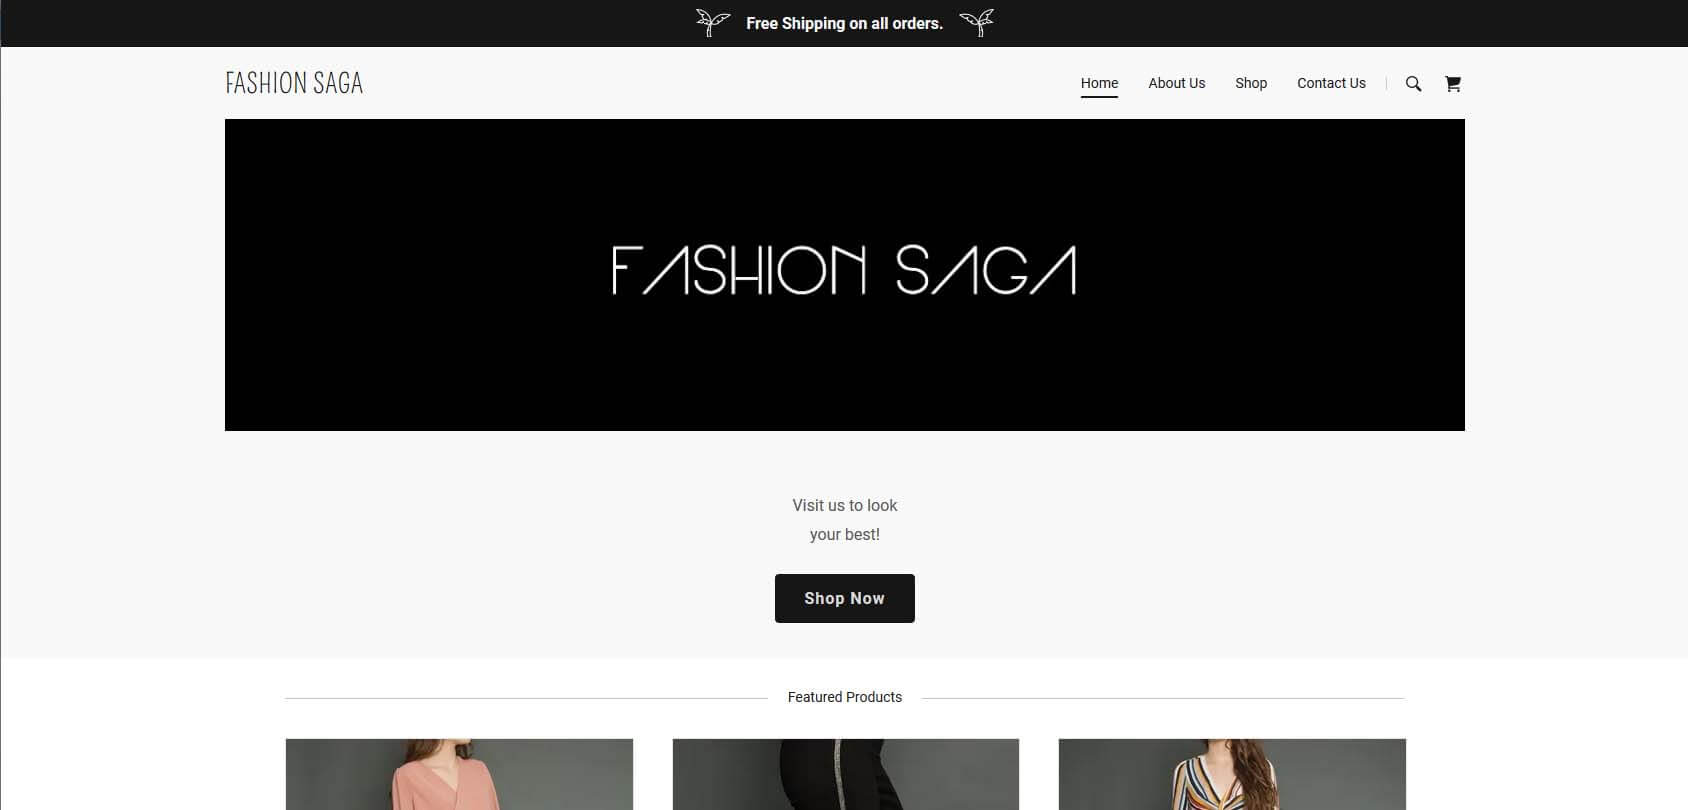 Fashion Saga Homepage